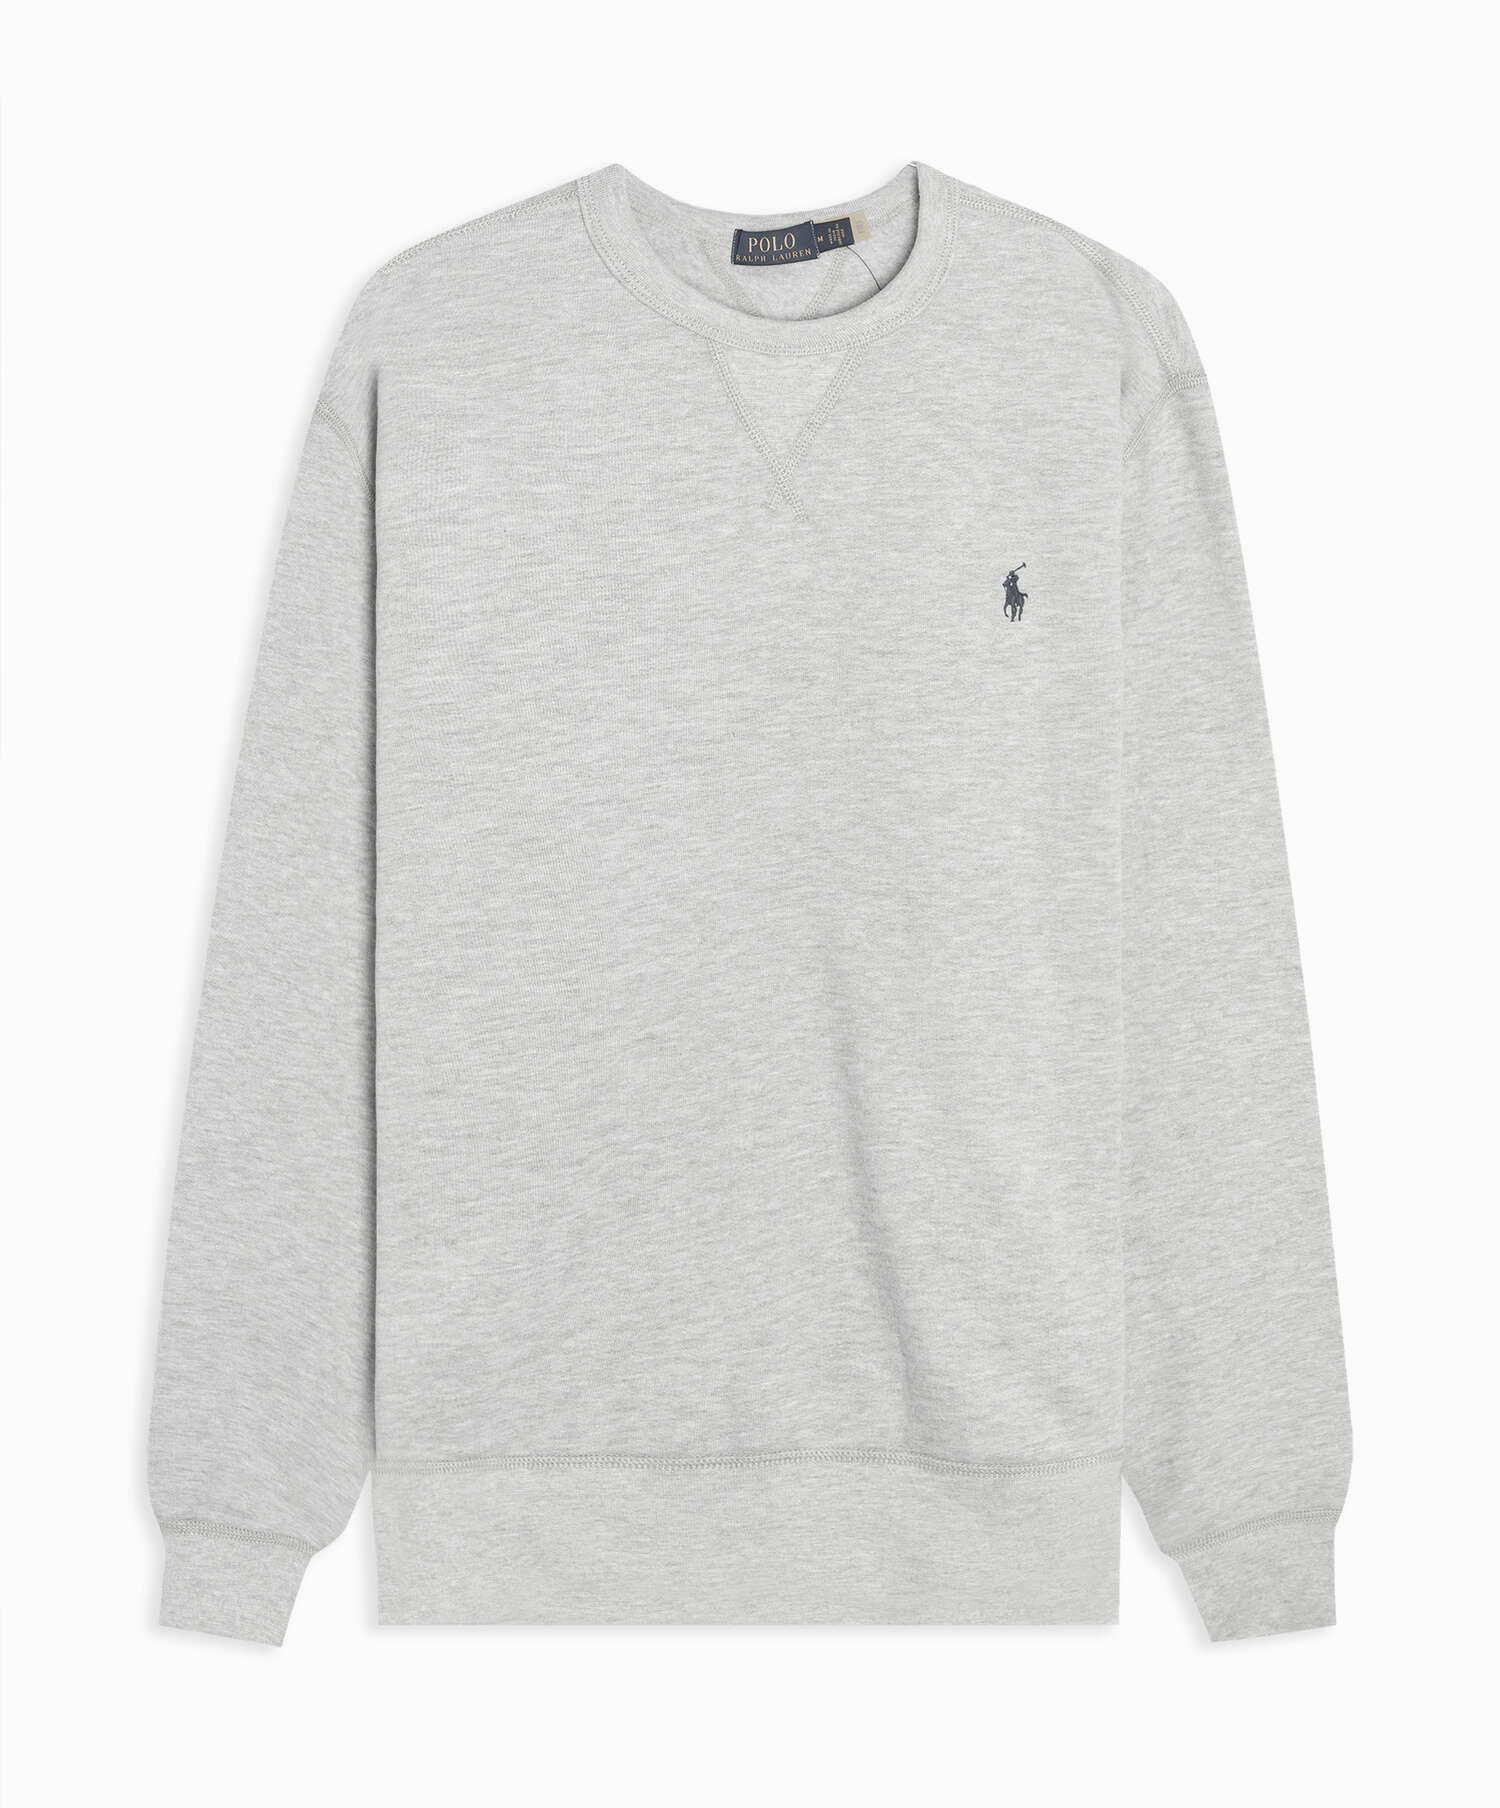 Polo Ralph Lauren Fleece Online Men\'s FOOTDISTRICT 710766772004| Sweatshirt at Classics Gray Buy